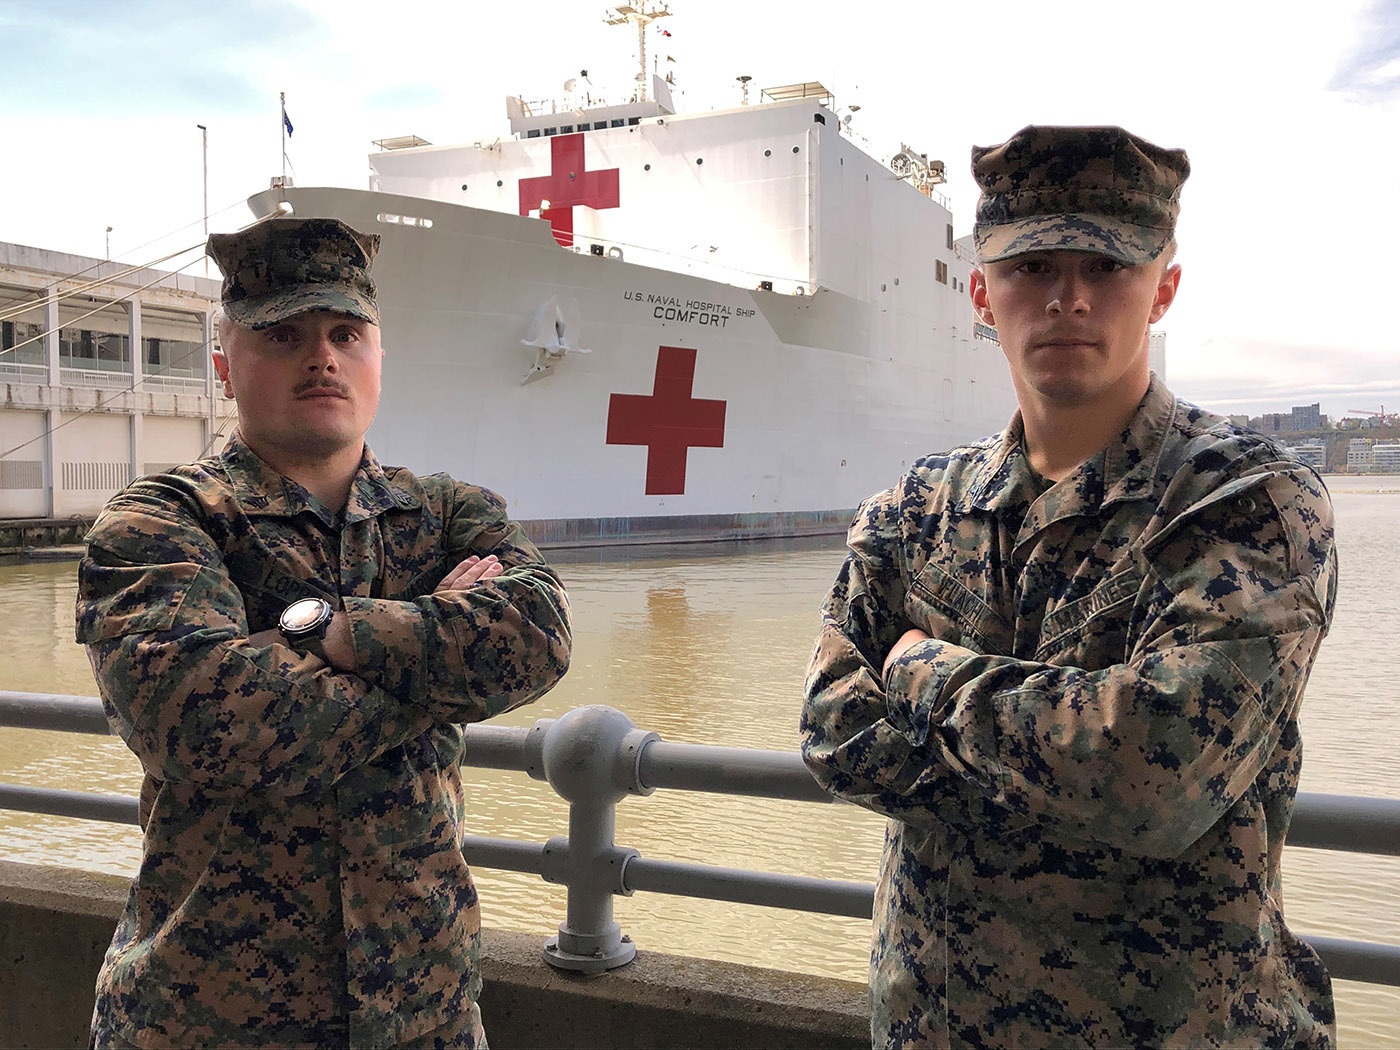 Корабль-госпиталь Comfort, принимающий пациентов по заданию Северного командования вооруженных сил США